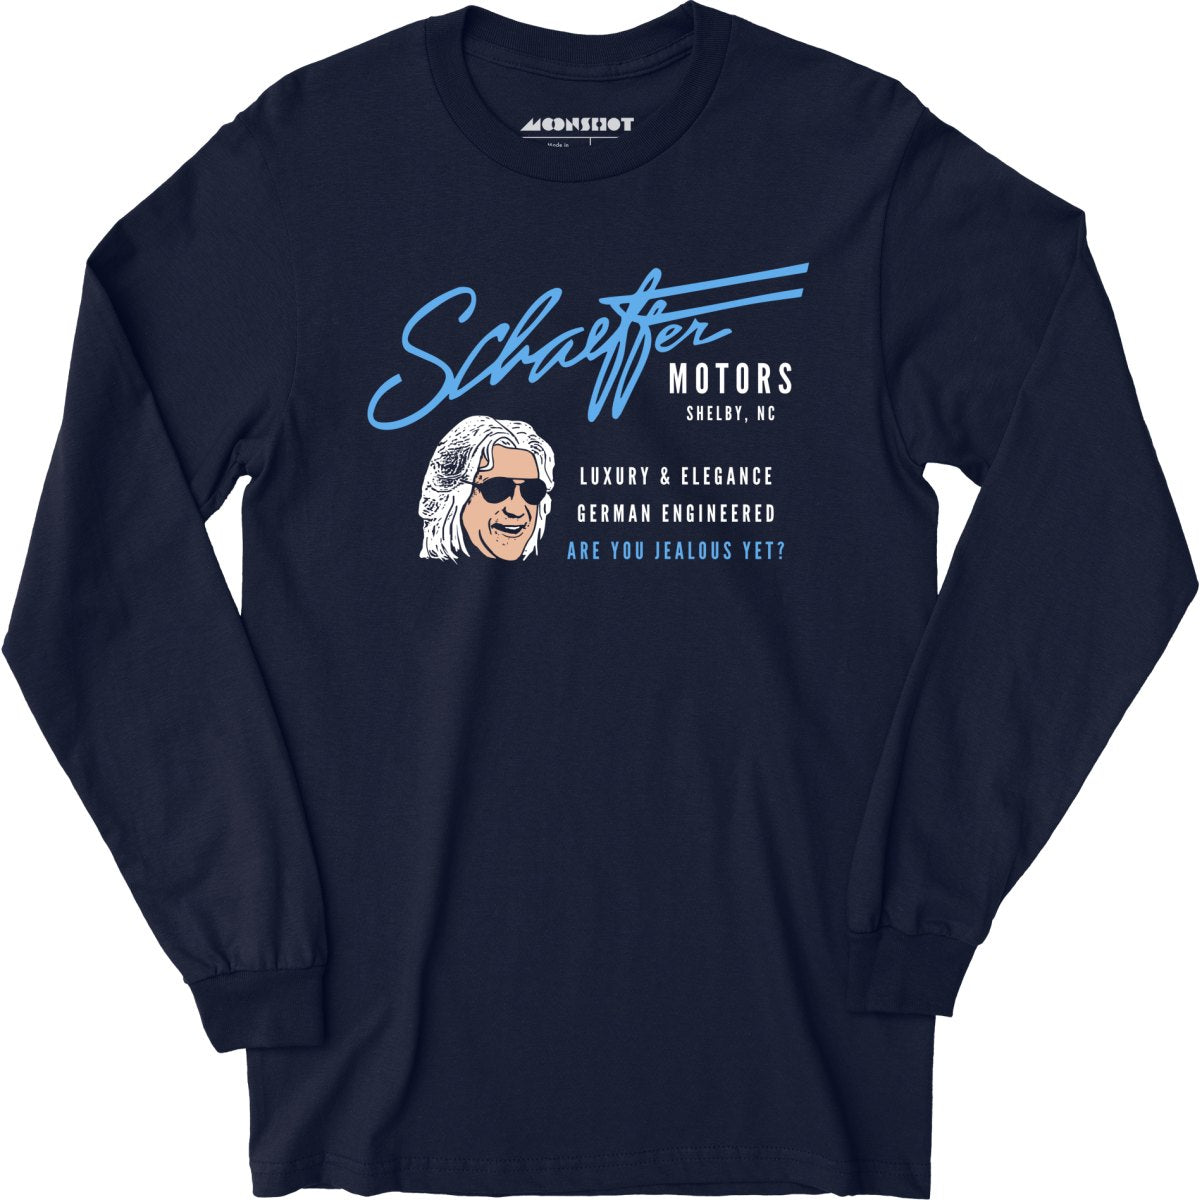 Schaeffer Motors - Long Sleeve T-Shirt